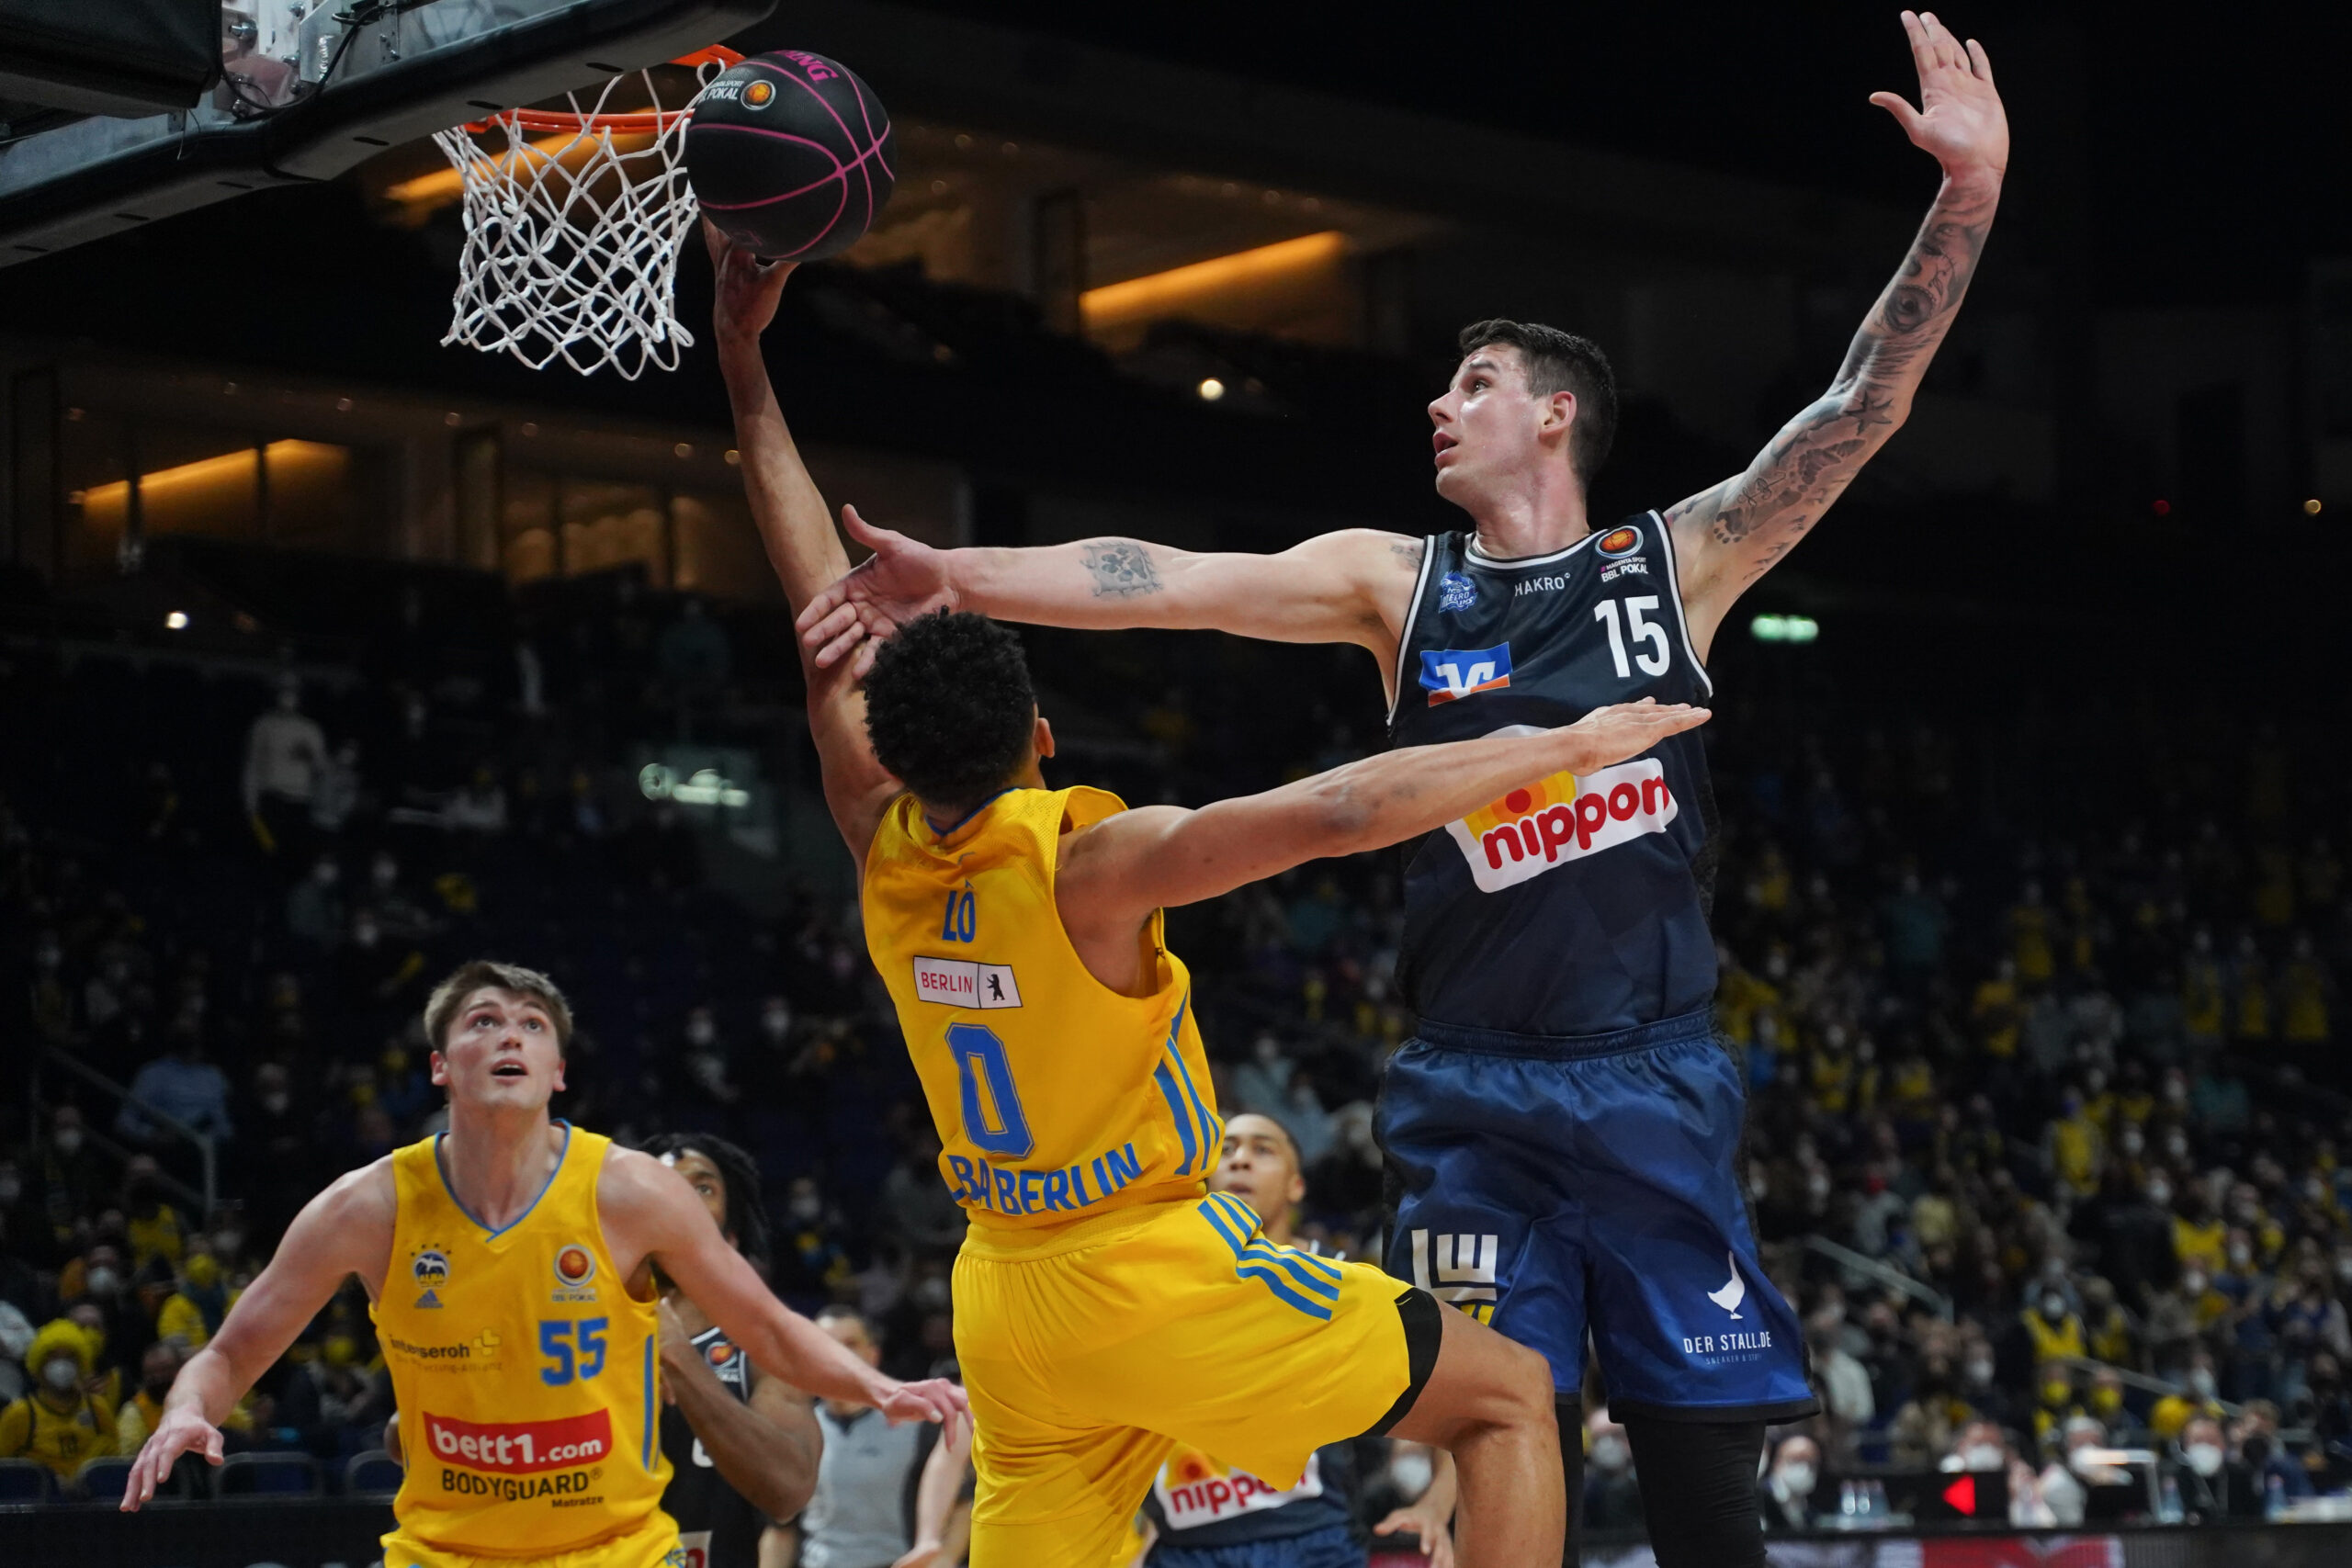 Basketballspieler Bogdan Radosavljevic versucht einen Korb des Gegners zu verhindern